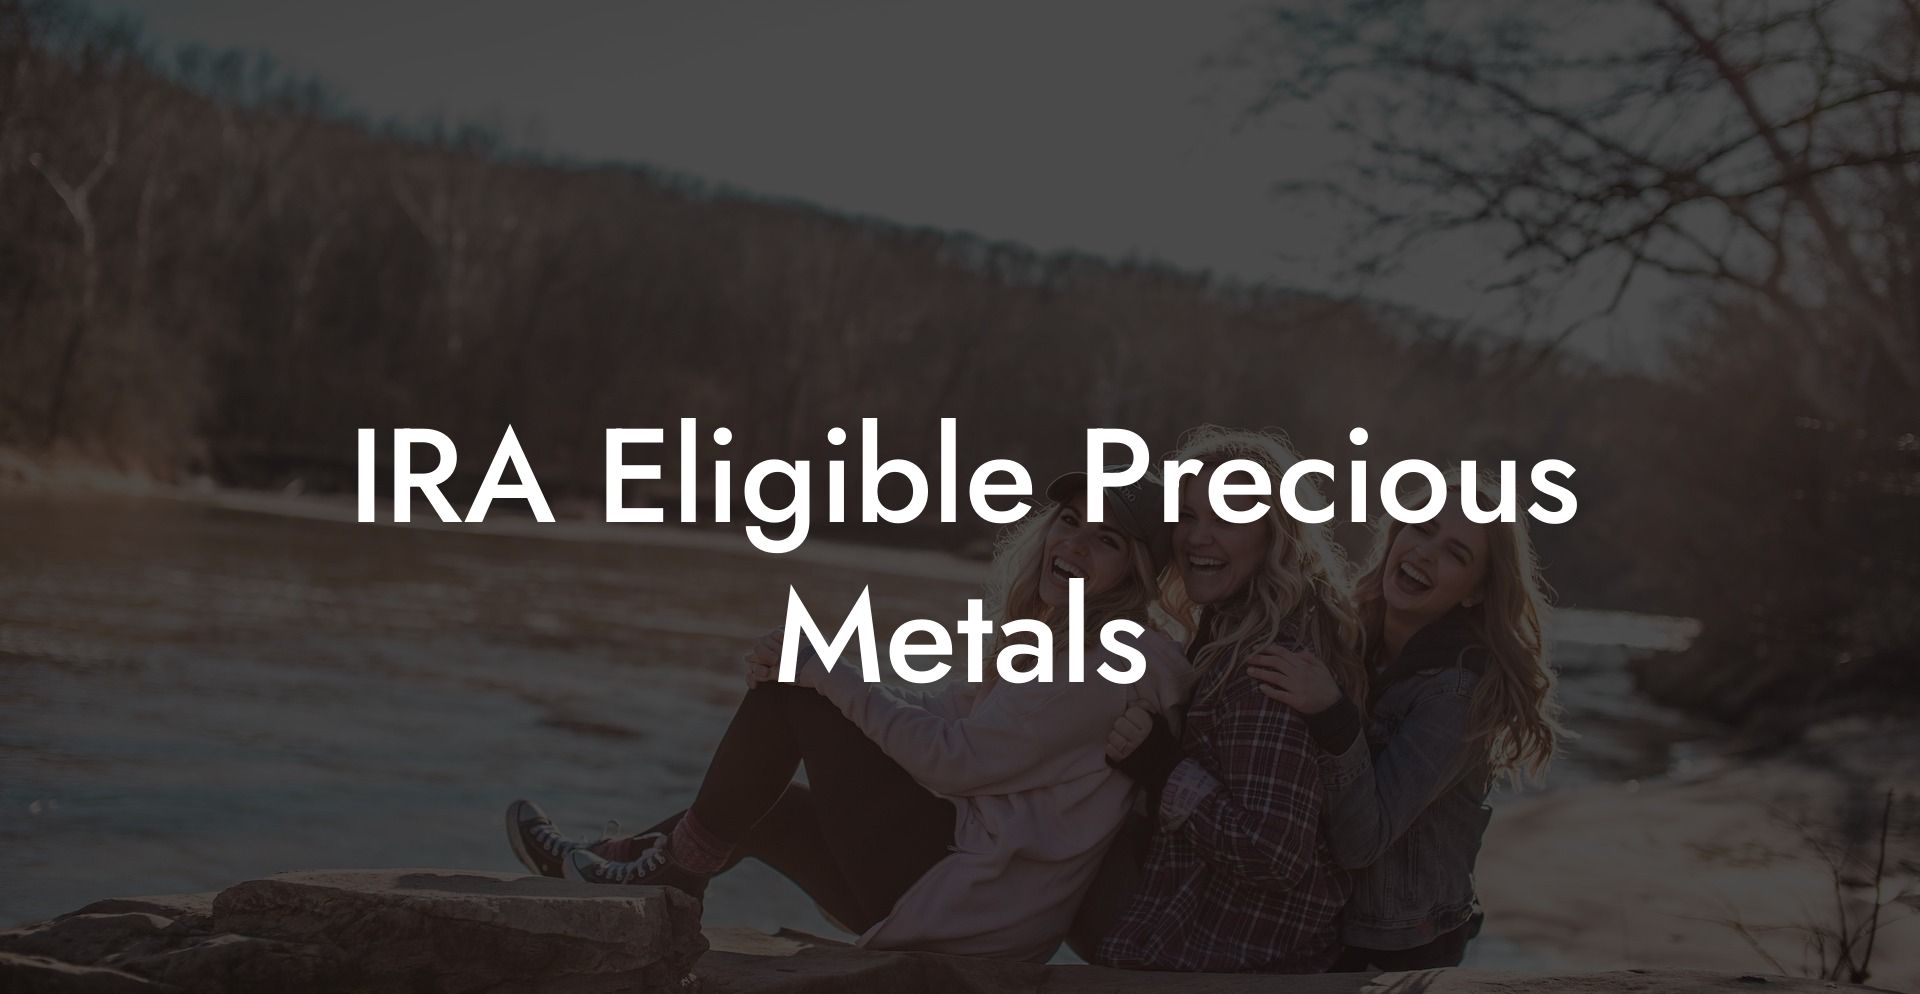 IRA Eligible Precious Metals